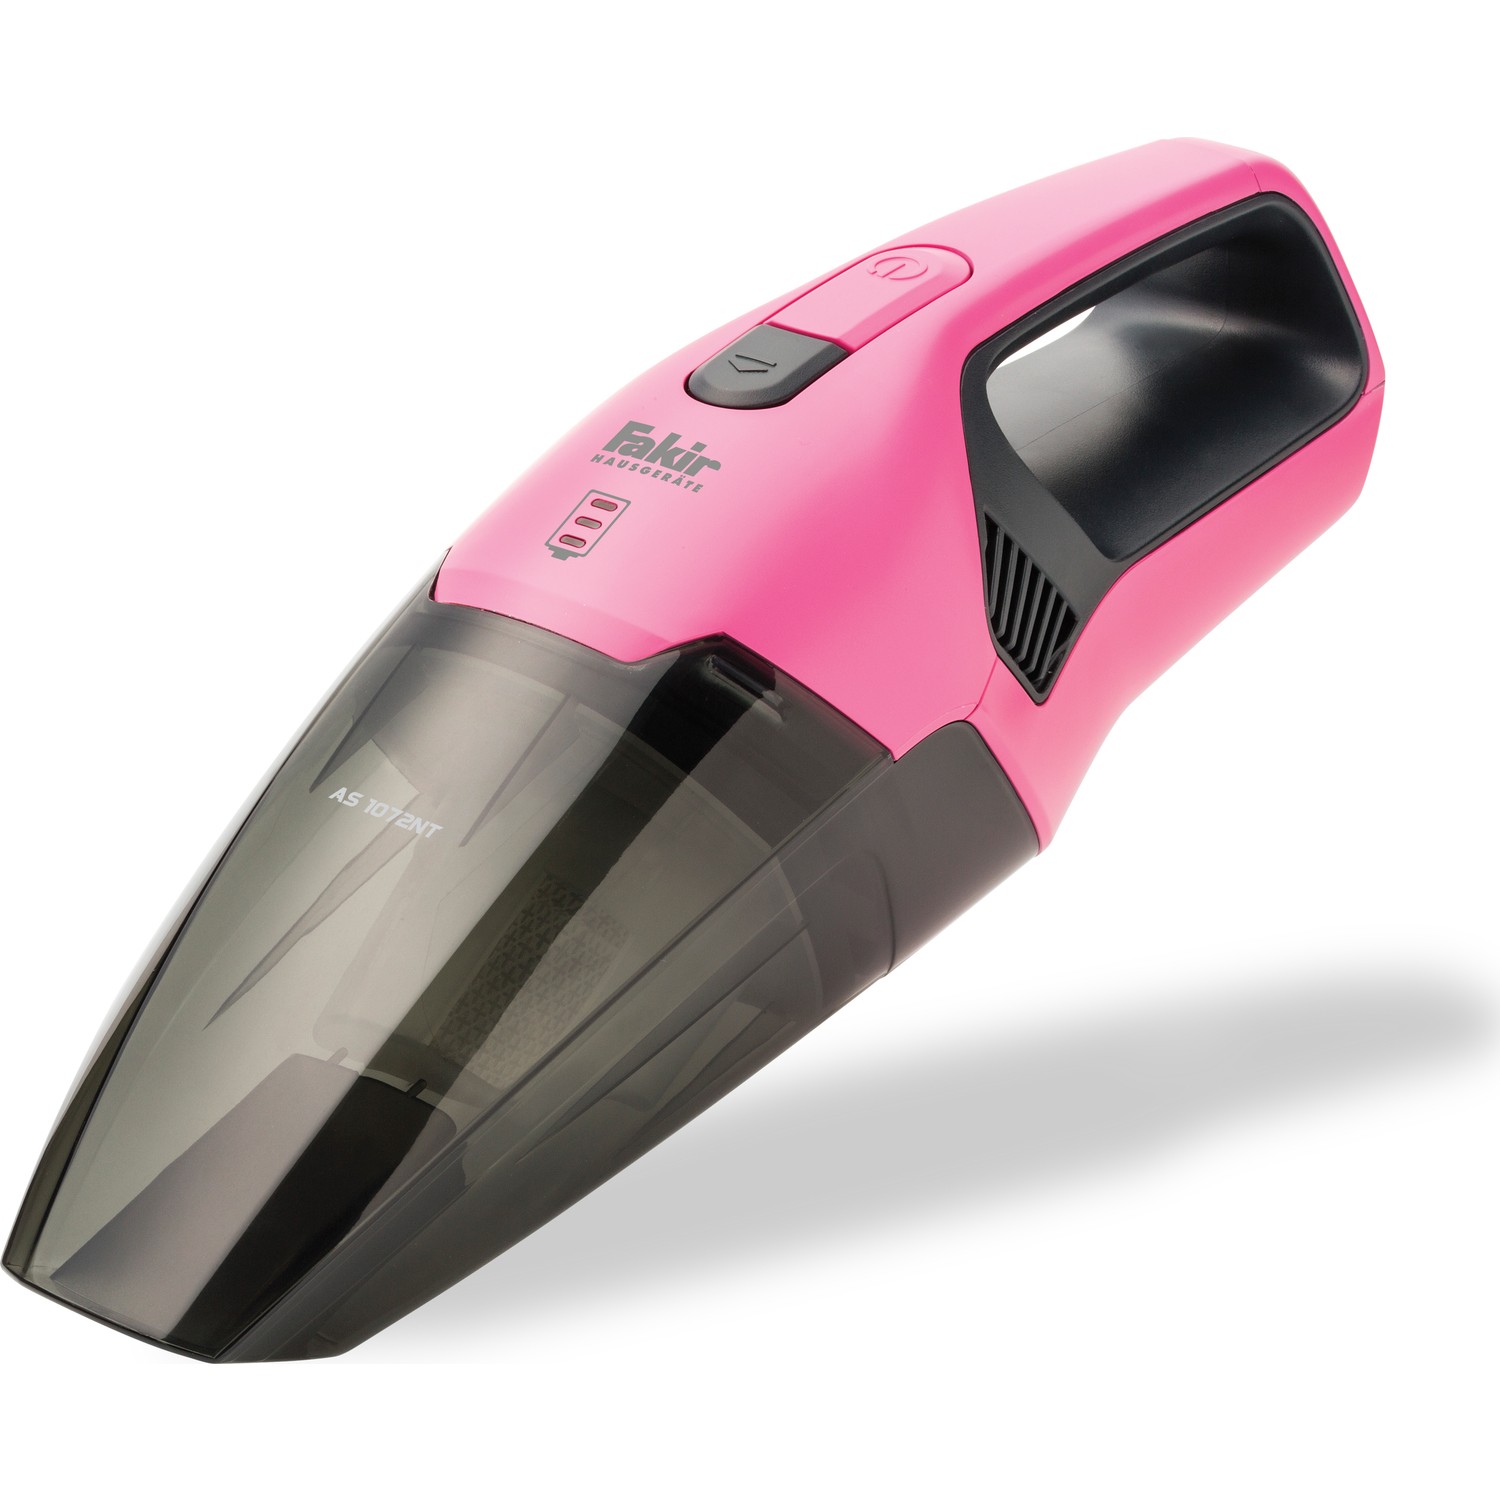 Fakir AS 1072 NT Wet Dry Vacuum Cleaner Pink